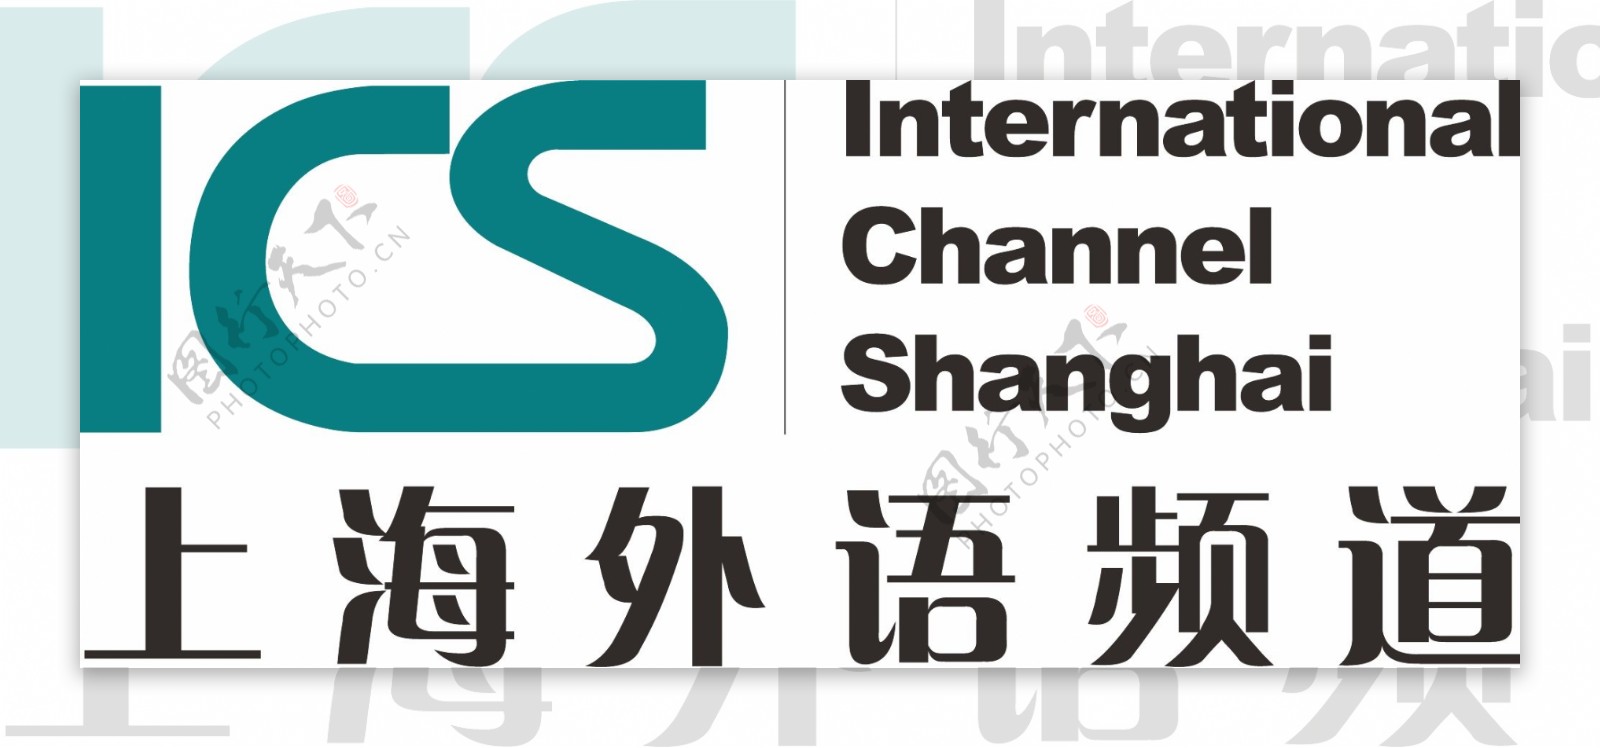 上海外语频道ICS电视台LOGO标志图片